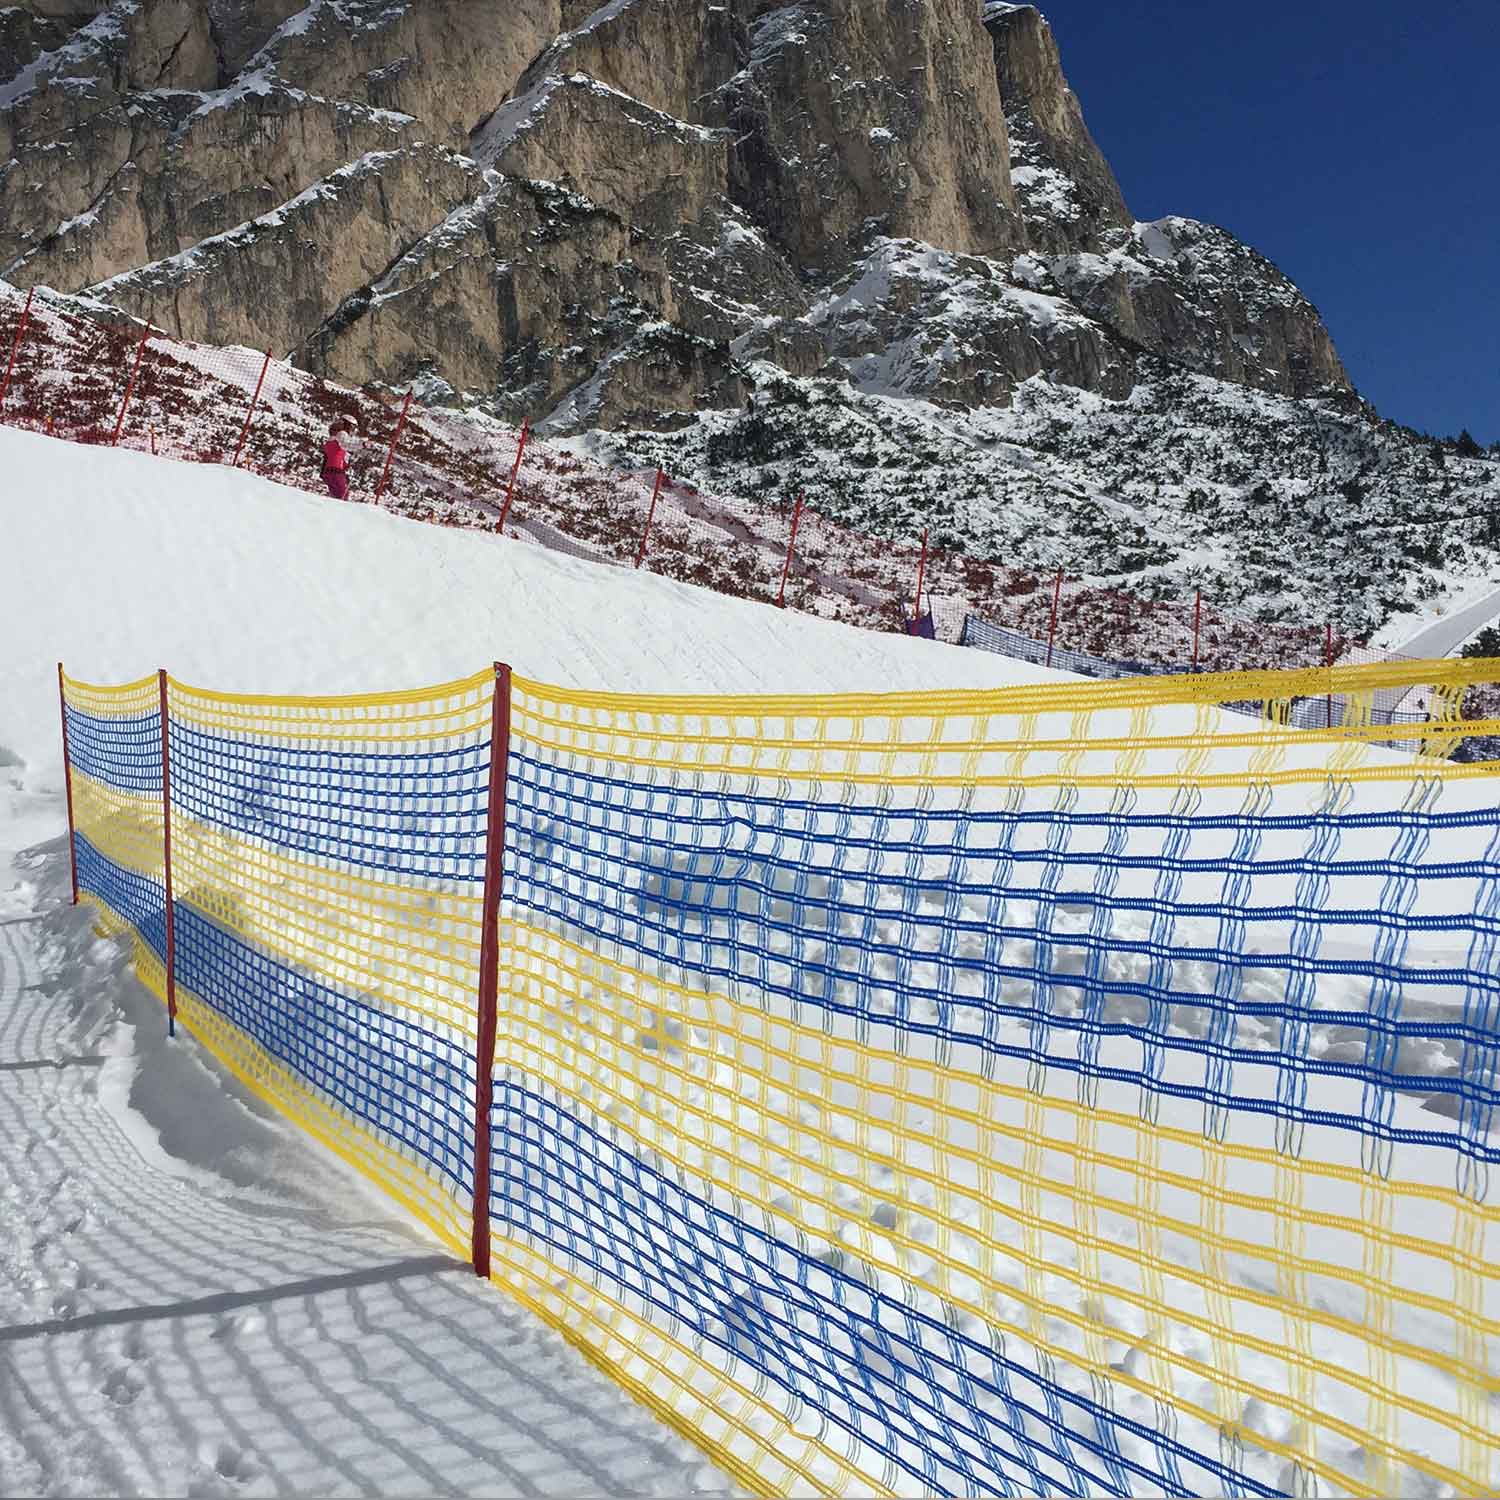 Delimitation barriers for ski slopes